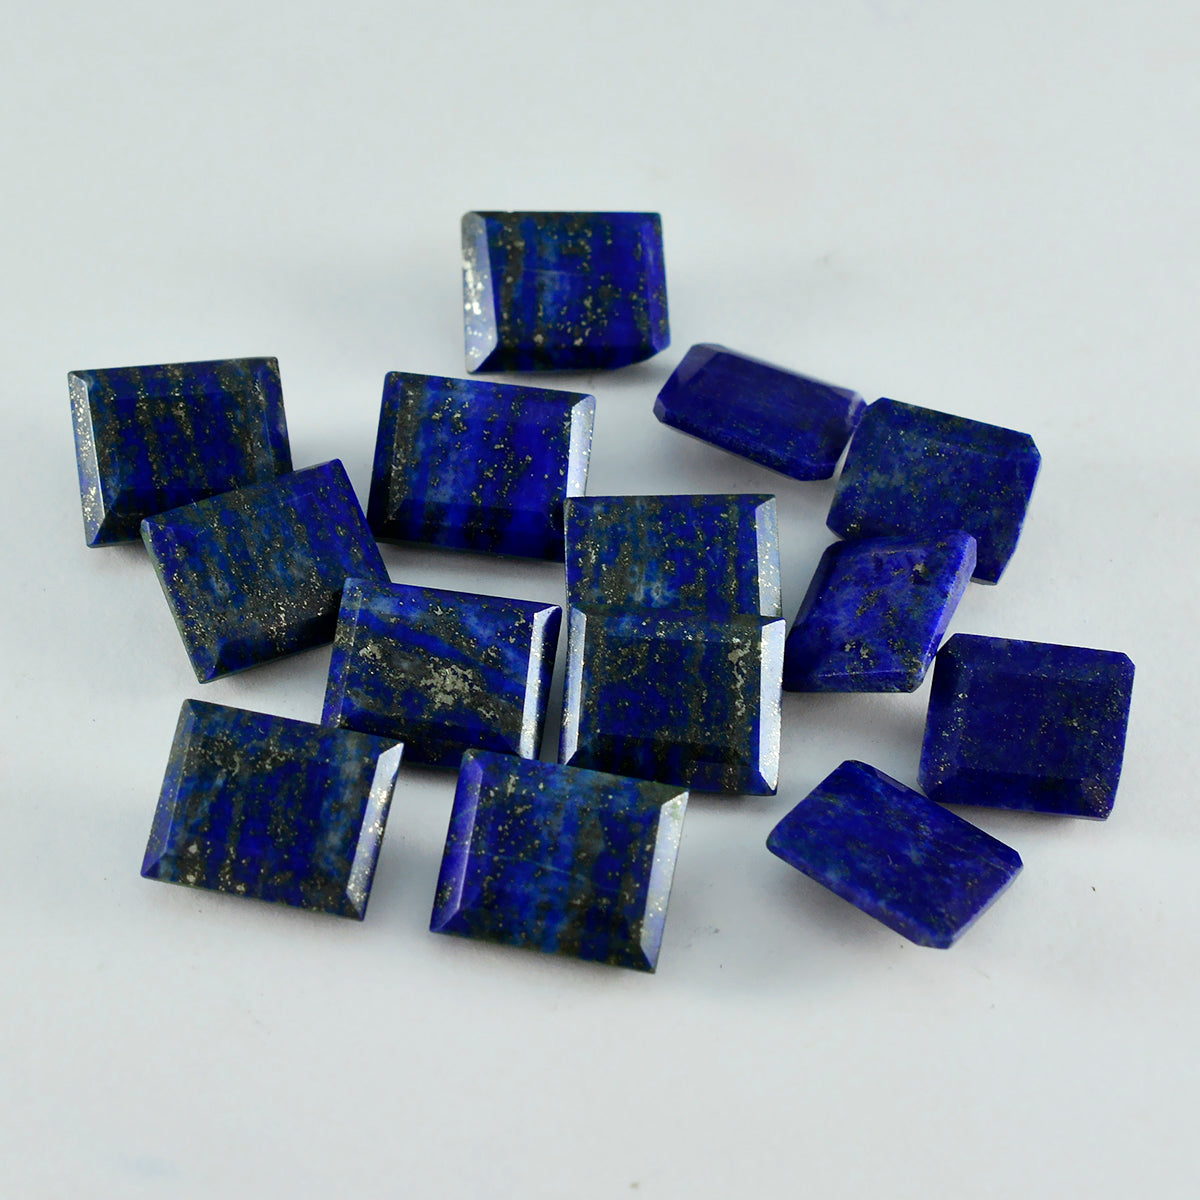 Riyogems 1PC Echte Blauwe Lapis Lazuli Facet 10x14 mm Octagon Vorm mooie Kwaliteit Gem